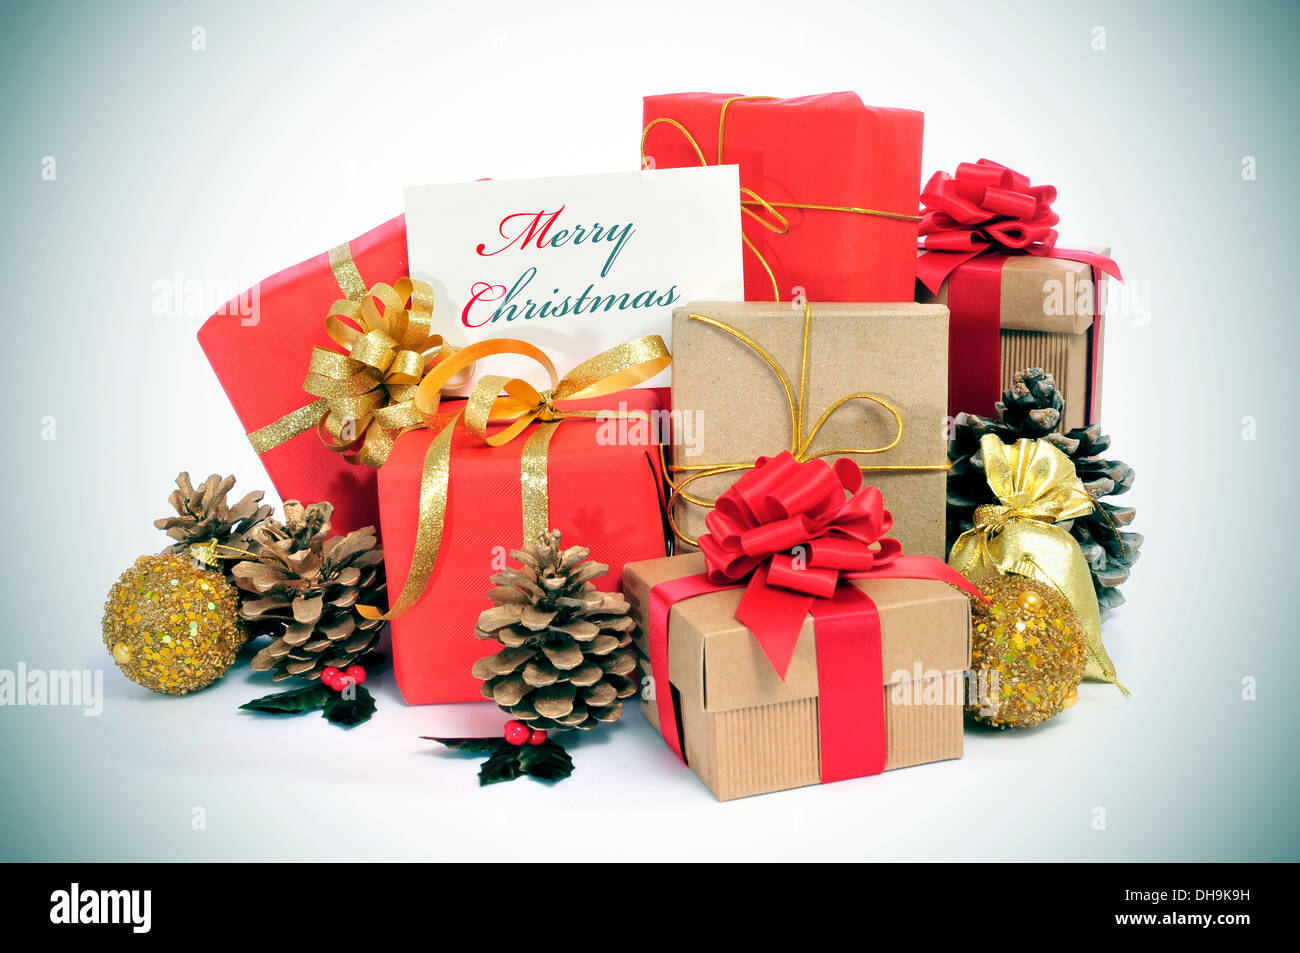 paar Weihnachtsgeschenke verpackt mit Geschenkpapier von verschiedenen Farben und Band Bögen, und einige Weihnachtsschmuck und eine signbo Stockfoto